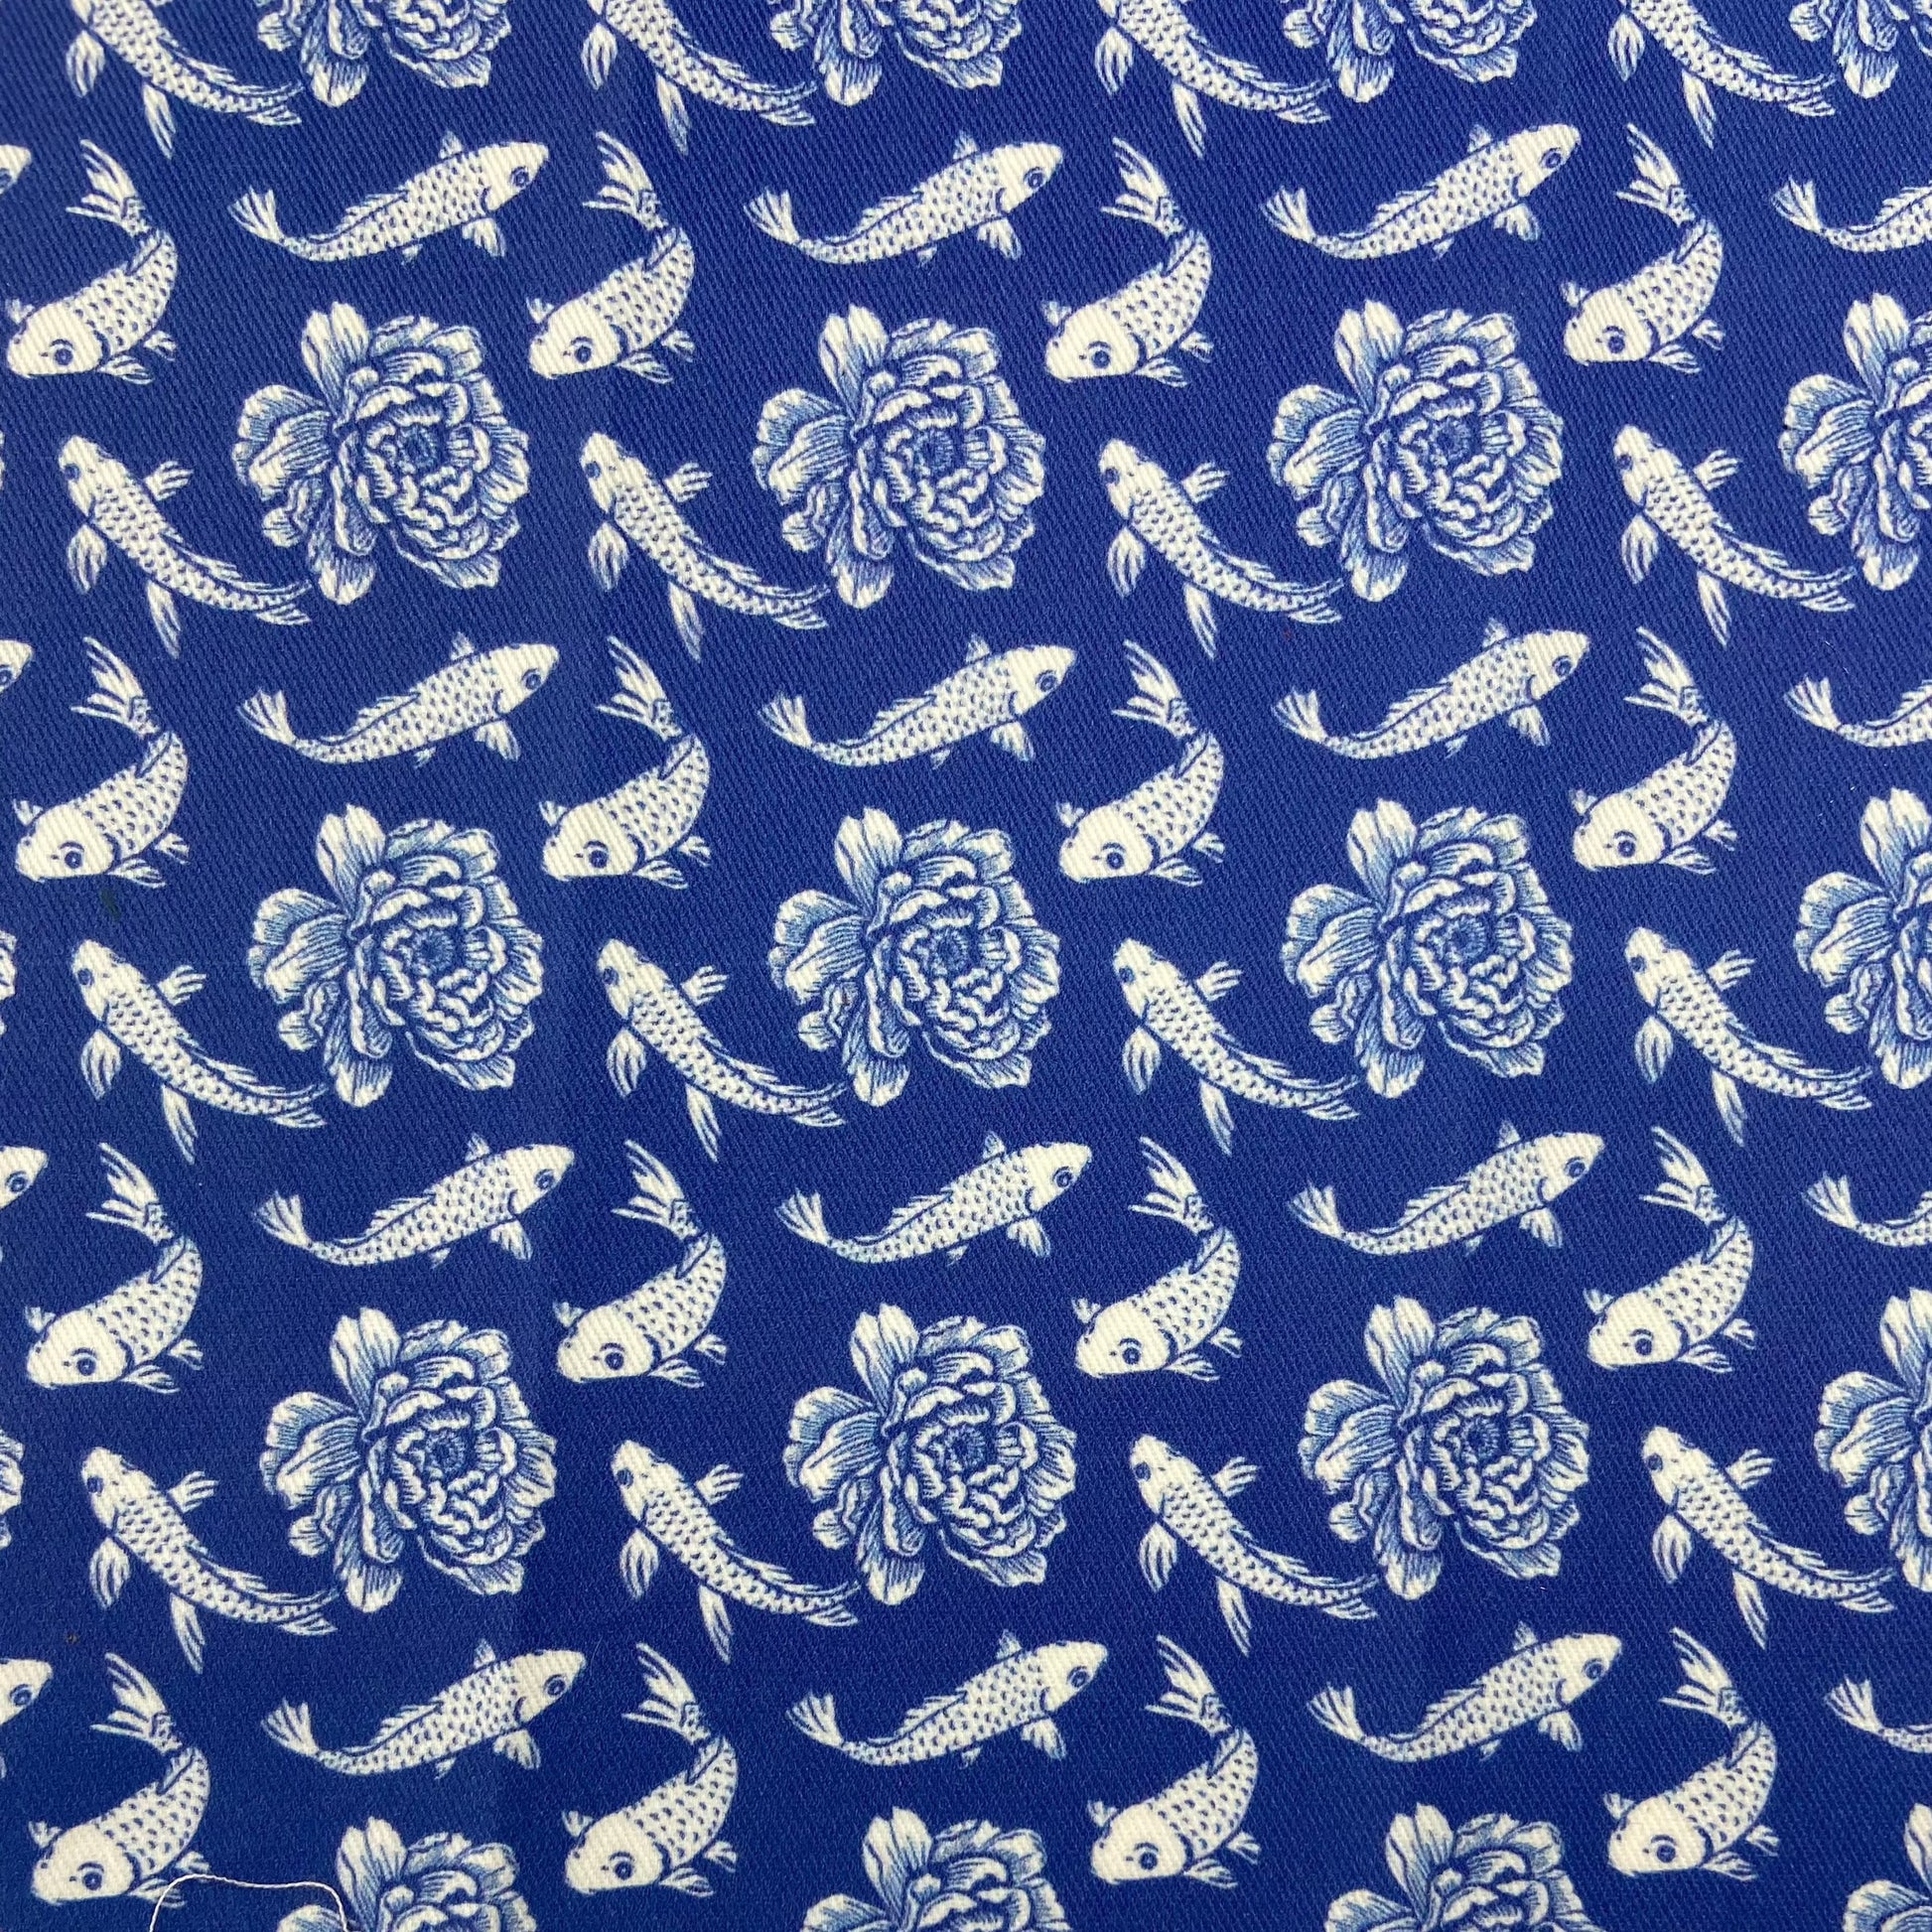 Sergé de coton imprimé motif poisson japonais et nénuphar blancs sur fond bleu Klein Majorelle bleu roi Indigo Koi fish pond Japan  